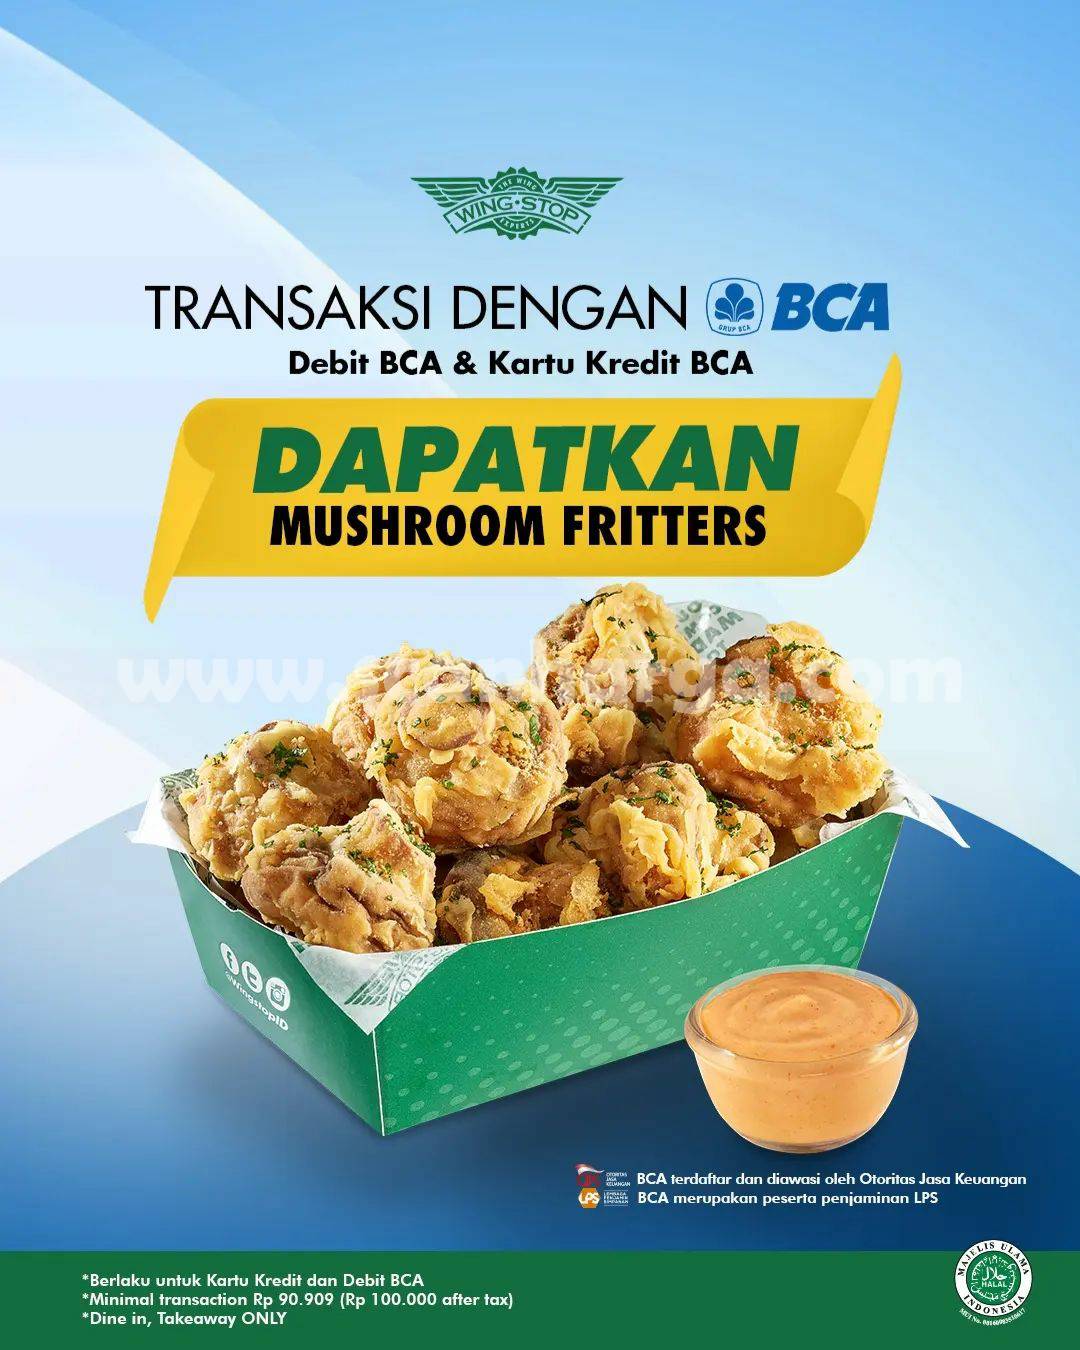 WINGSTOP Promo GRATIS Mushroom Fritters dengan Kartu BCA